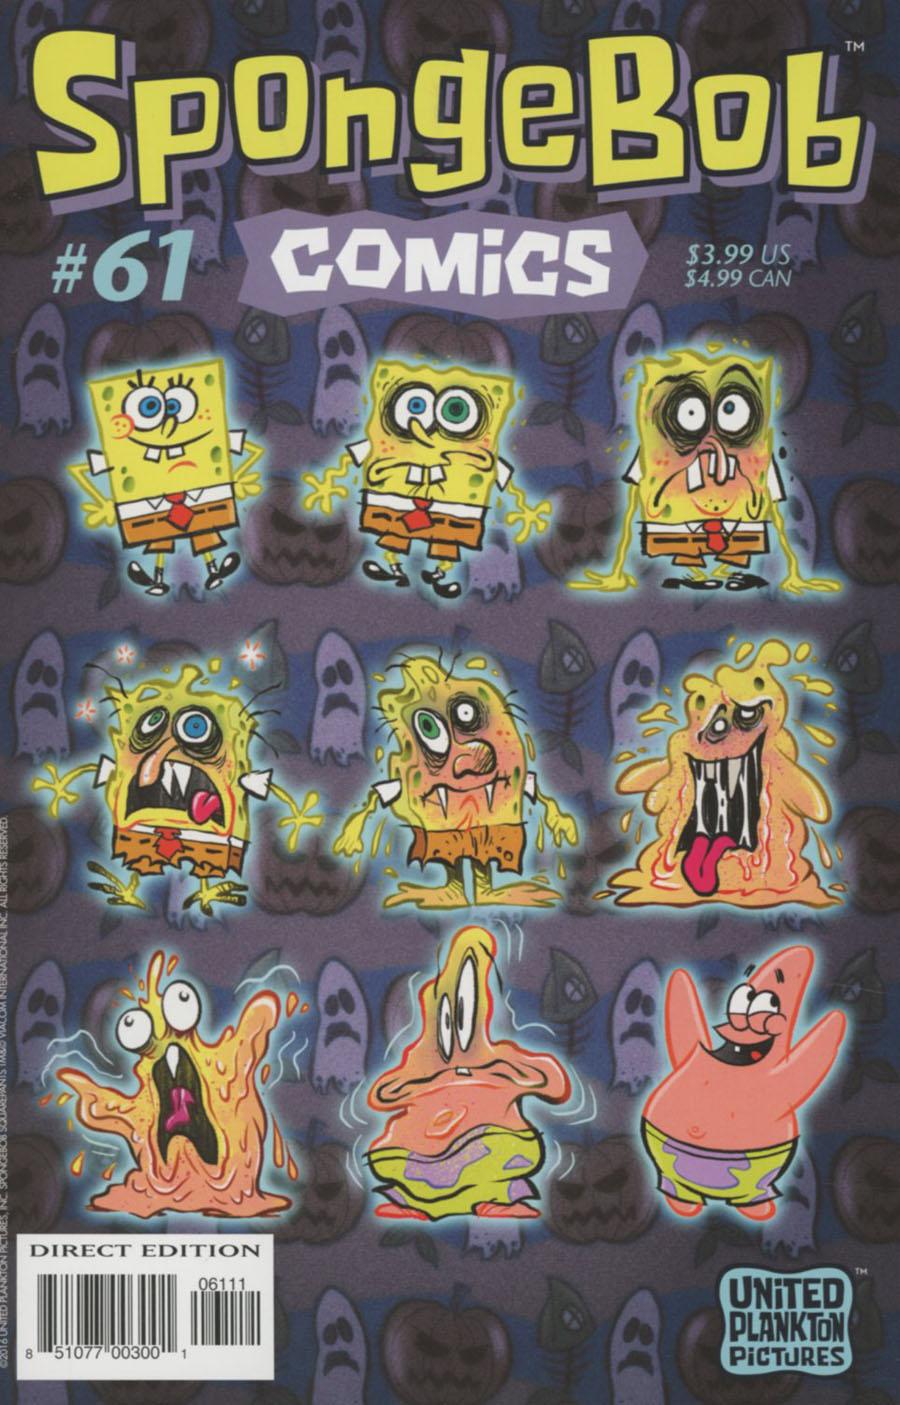 SpongeBob Comics Vol. 1 #61